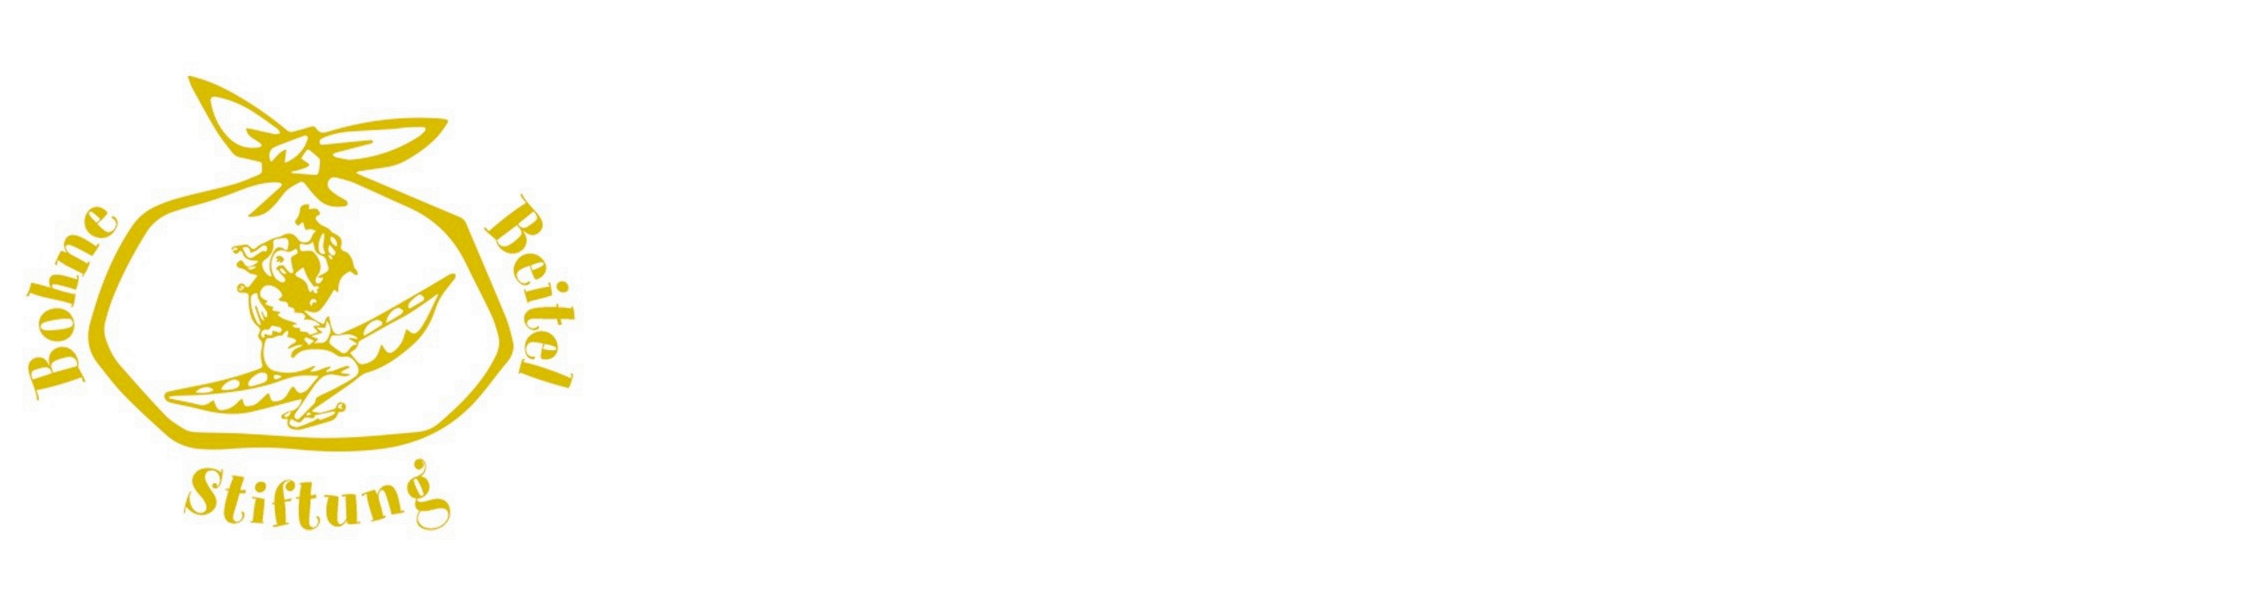 Bohnebeitel Stiftung